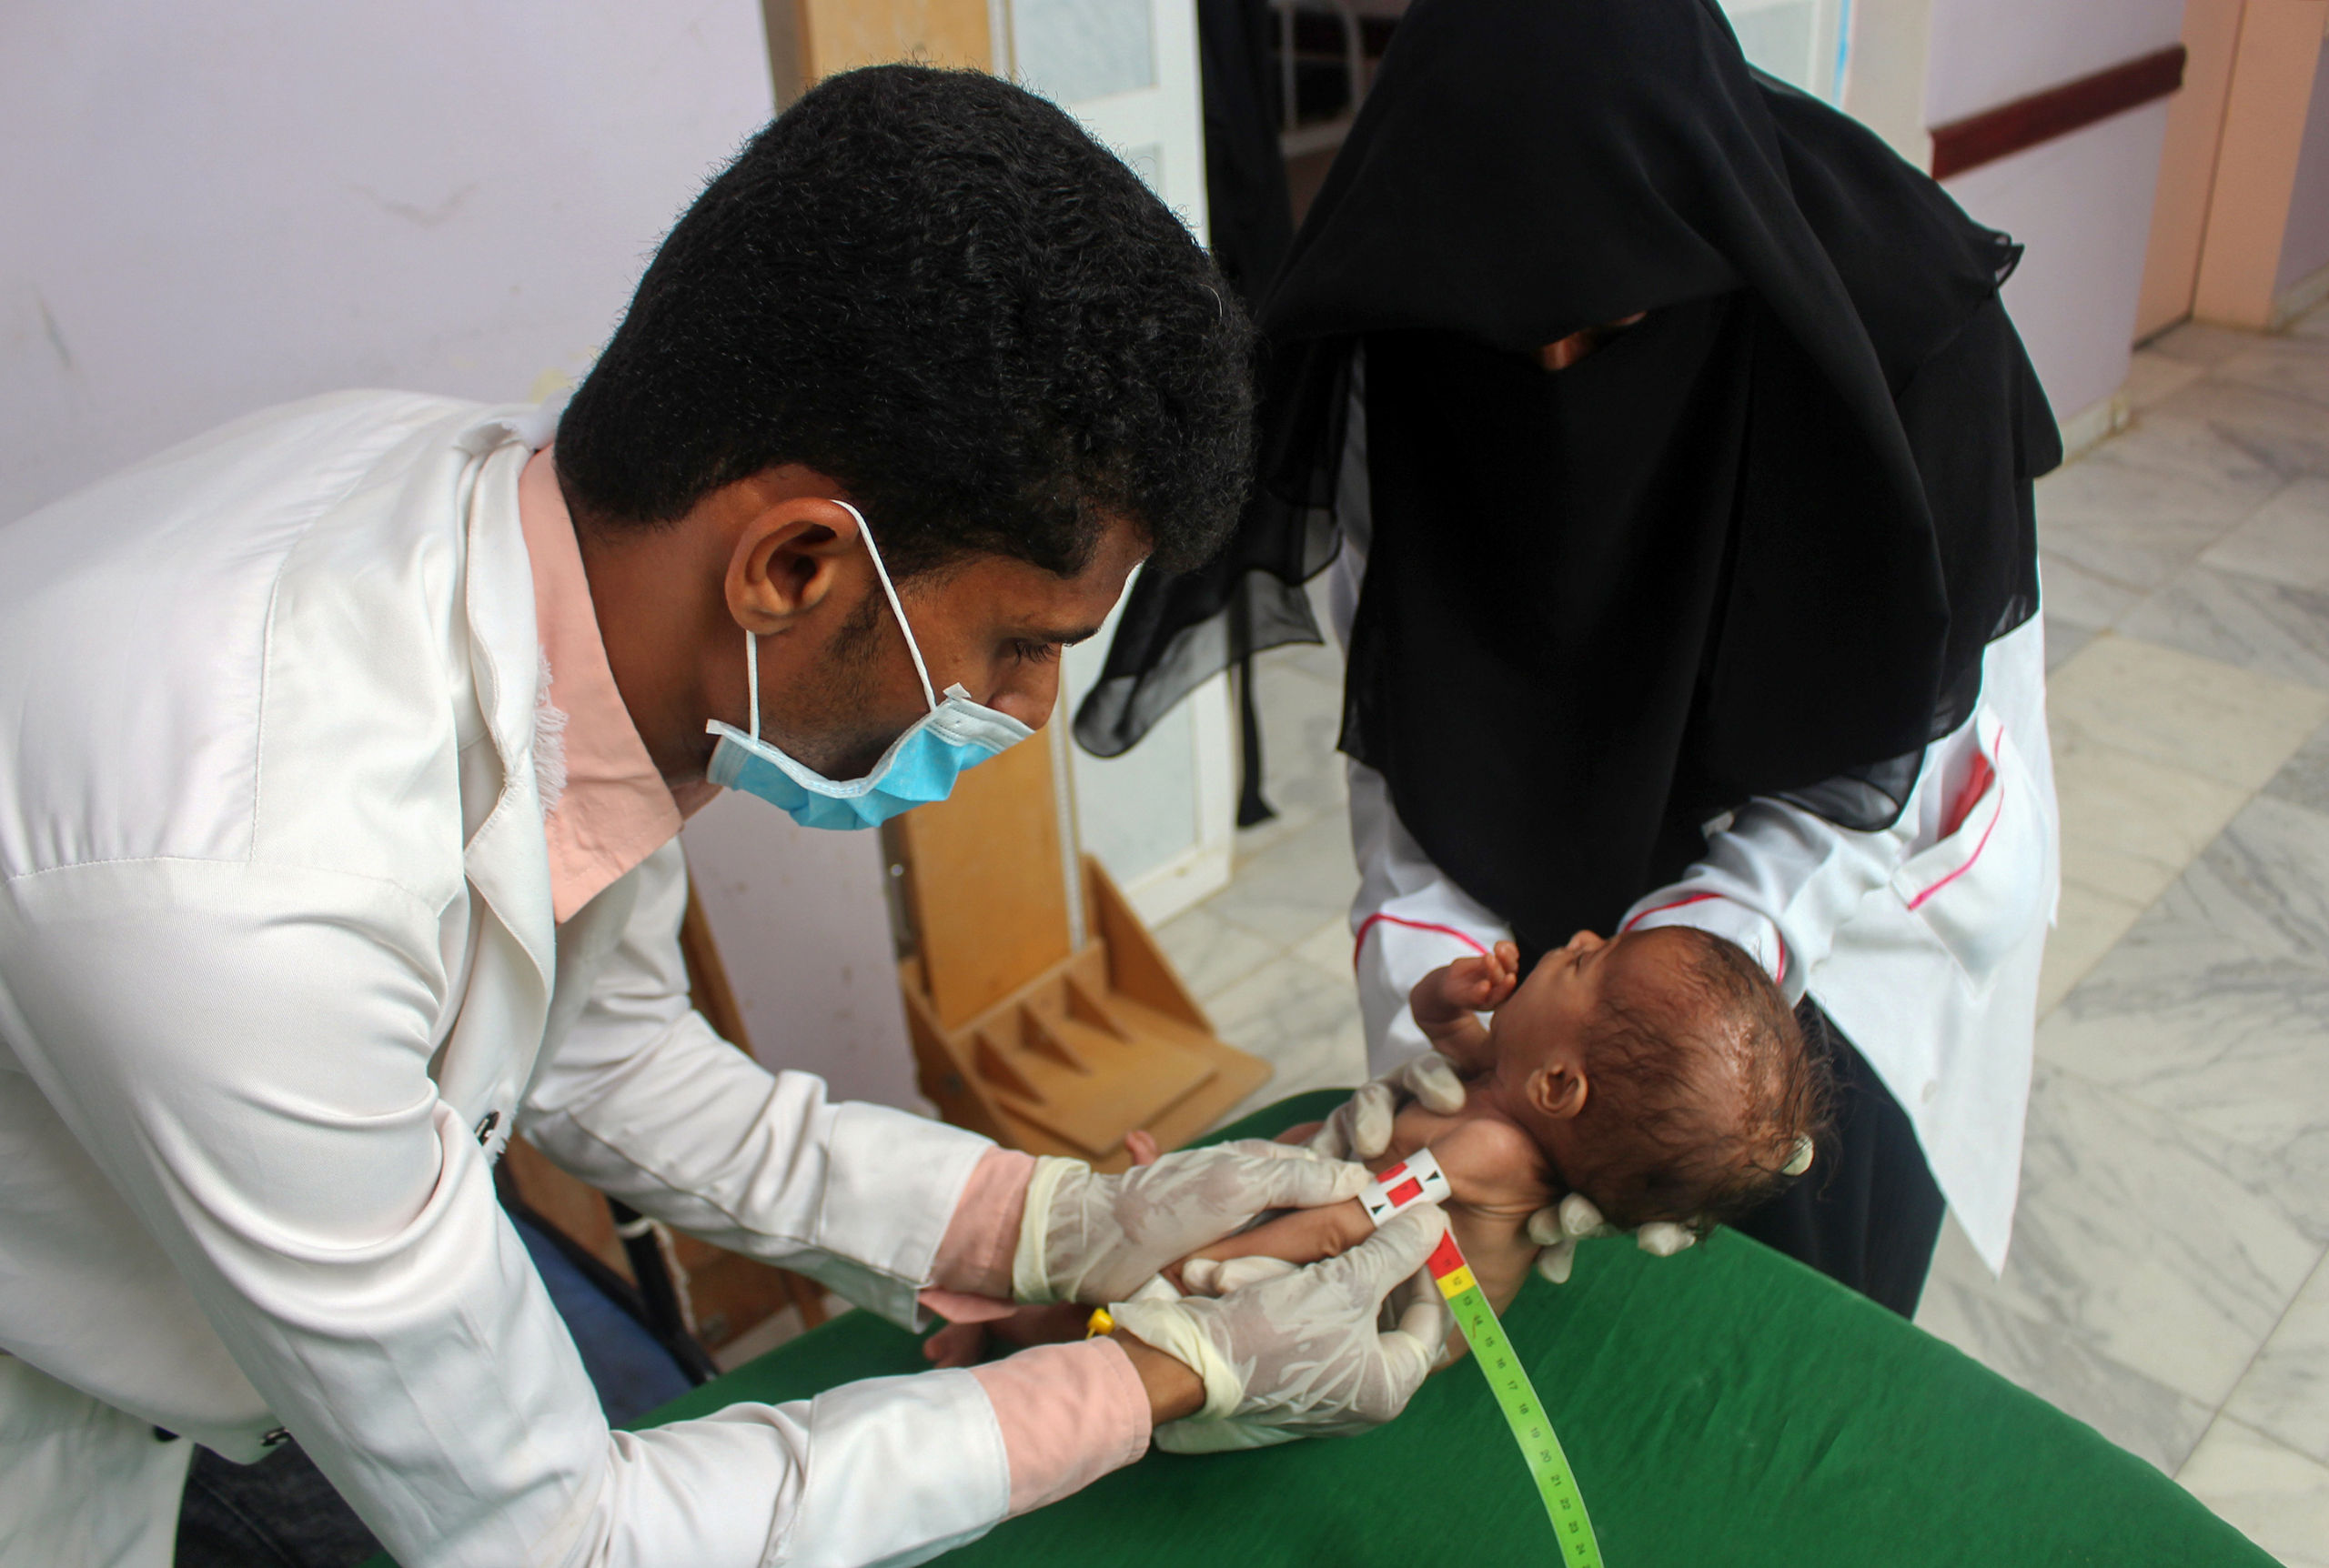 Een ondervoed kind uit Jemen wordt onderzocht door medisch personeel.